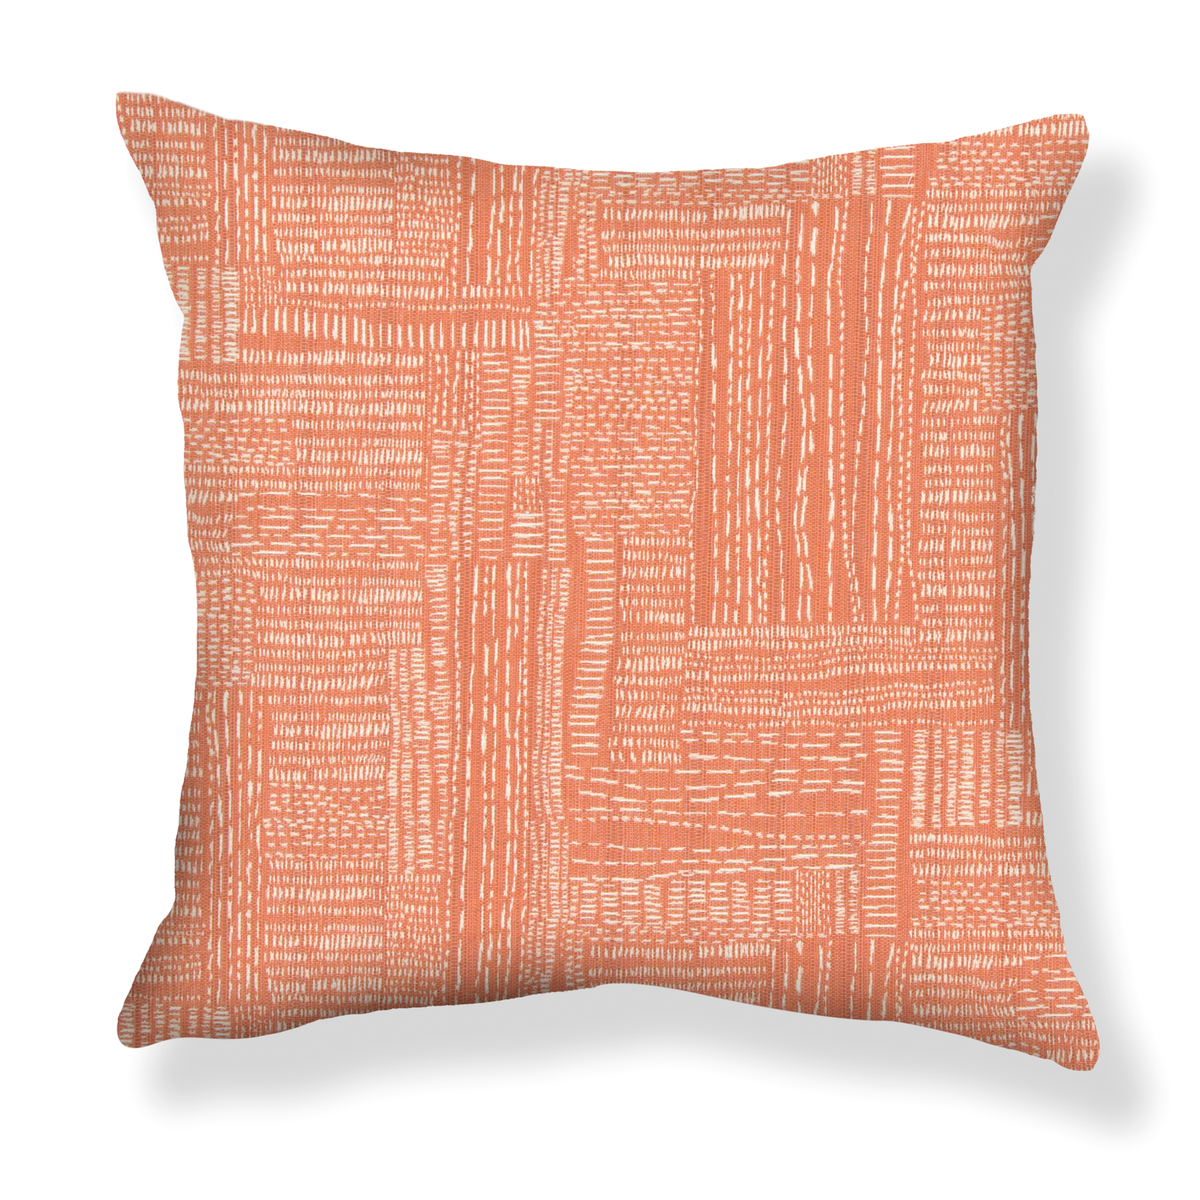 Sashiko Stitch Pillow in Tangerine